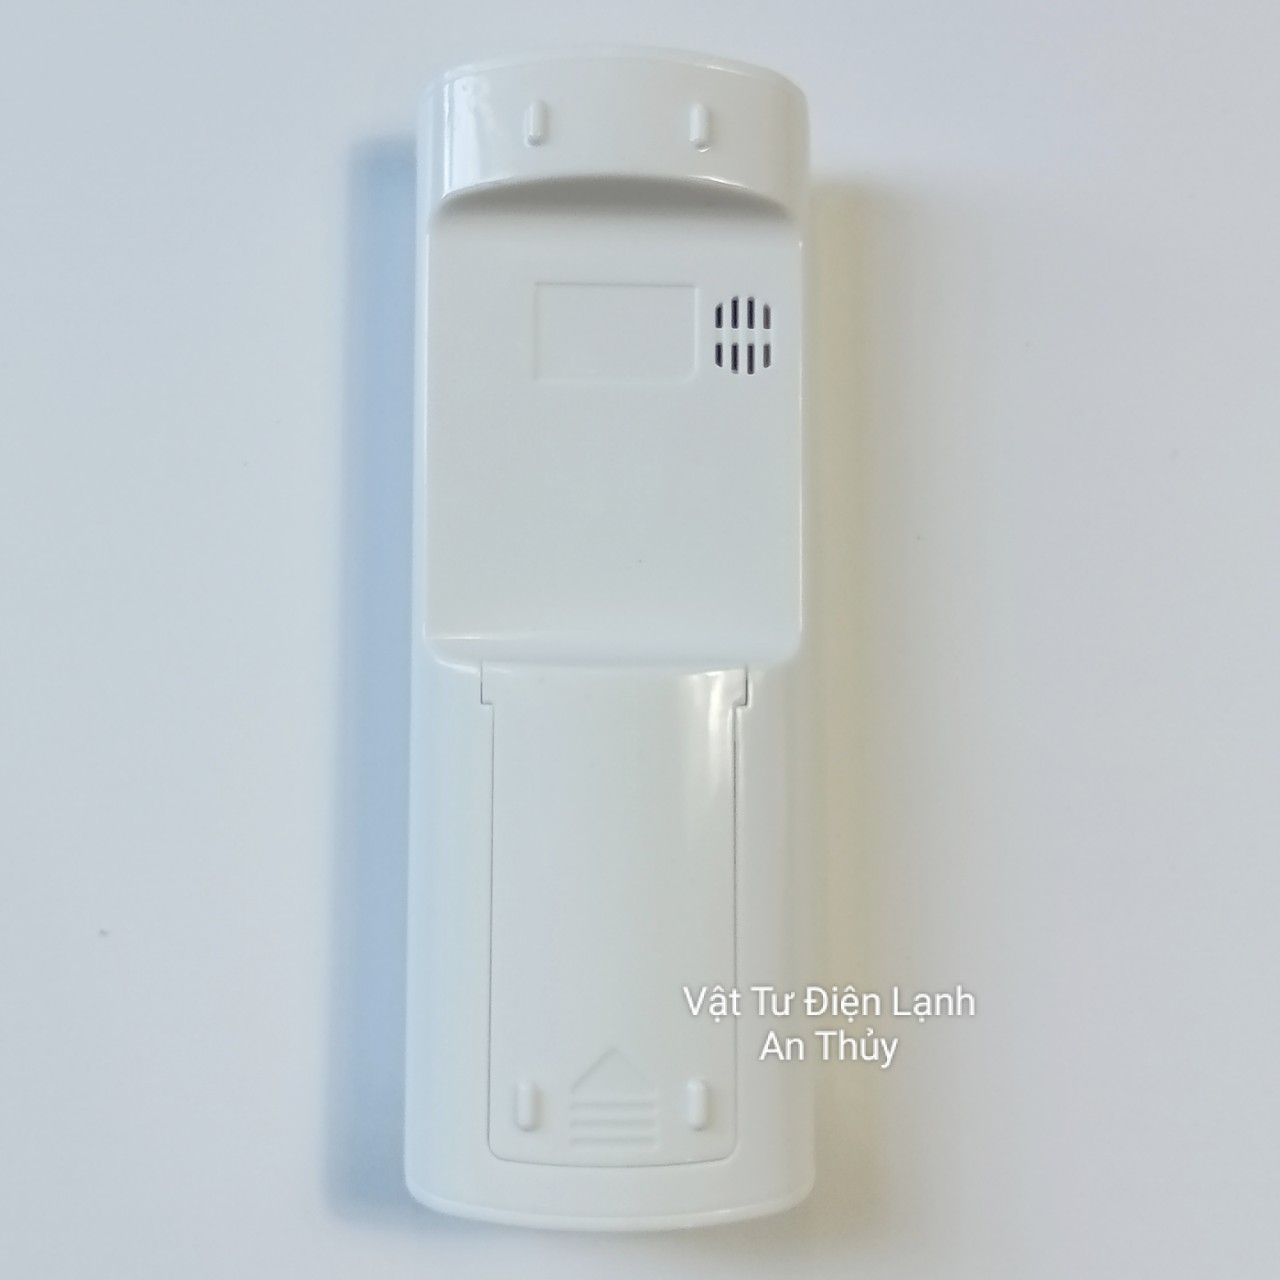 Remote máy lạnh ASANZO nút nguồn xanh